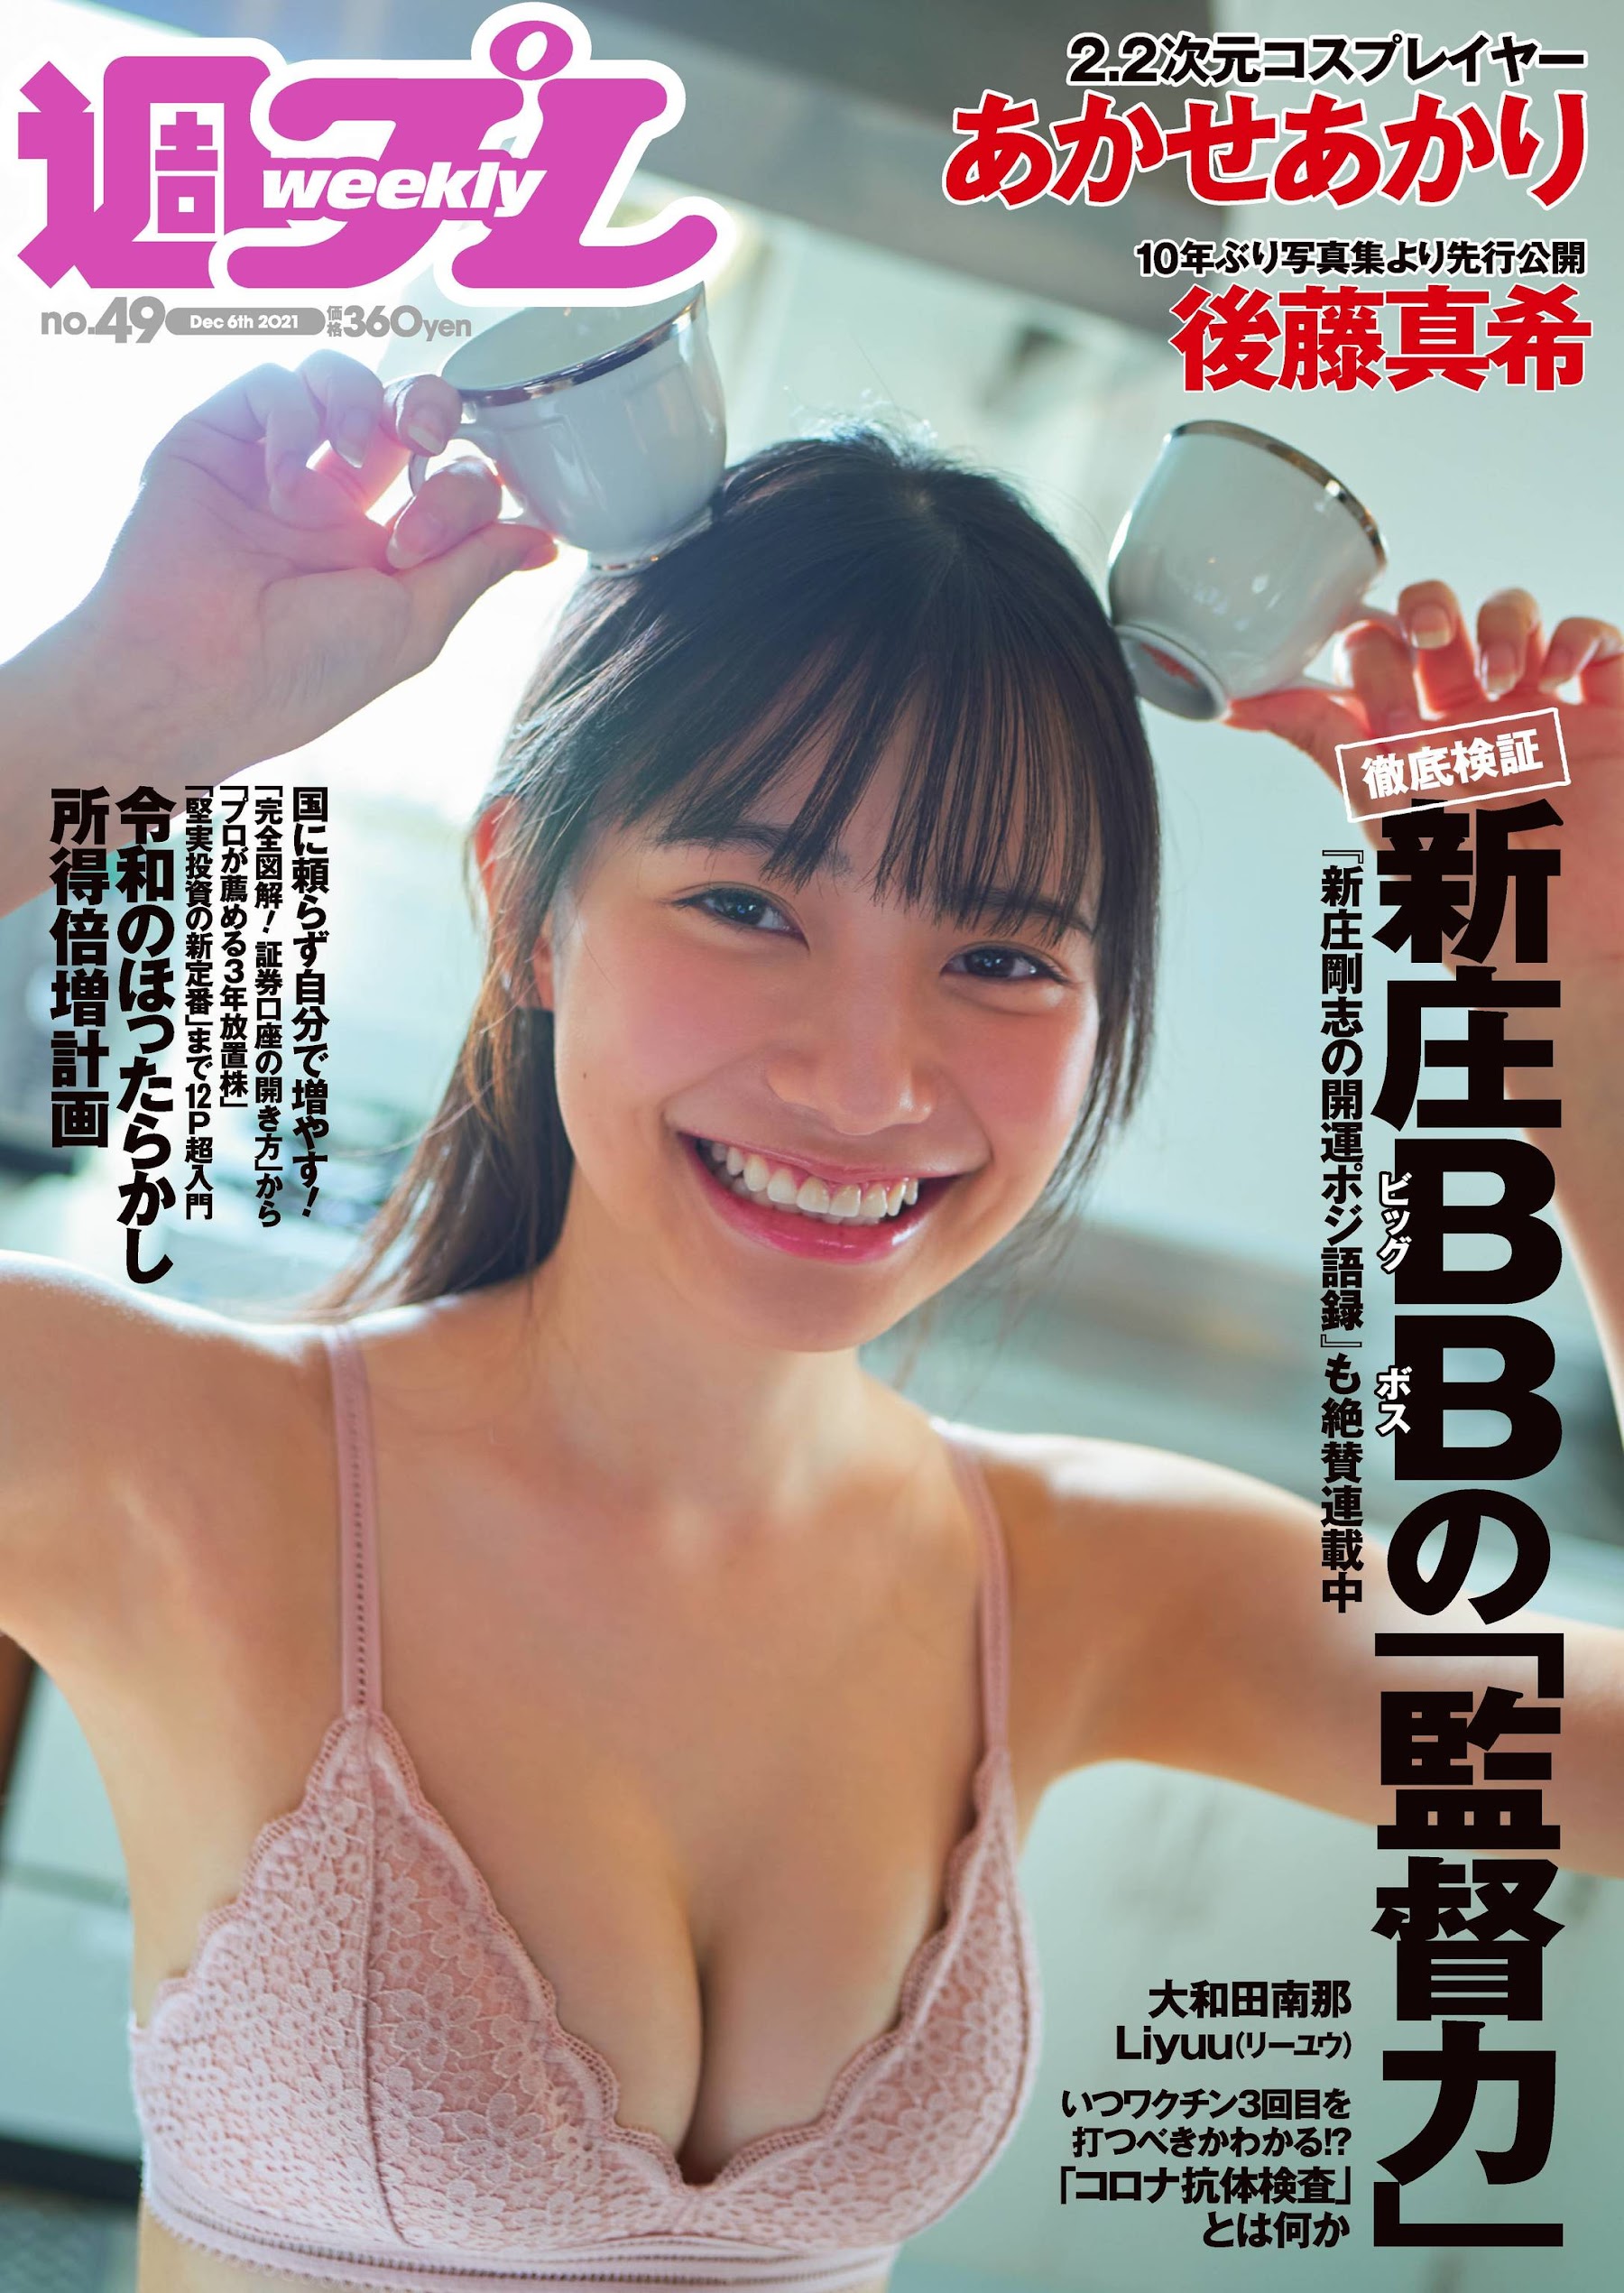 あかせあかり 大和田南那 Liyuu Weekly Playboy 2021.12.06 No.49 高清套图 第2张